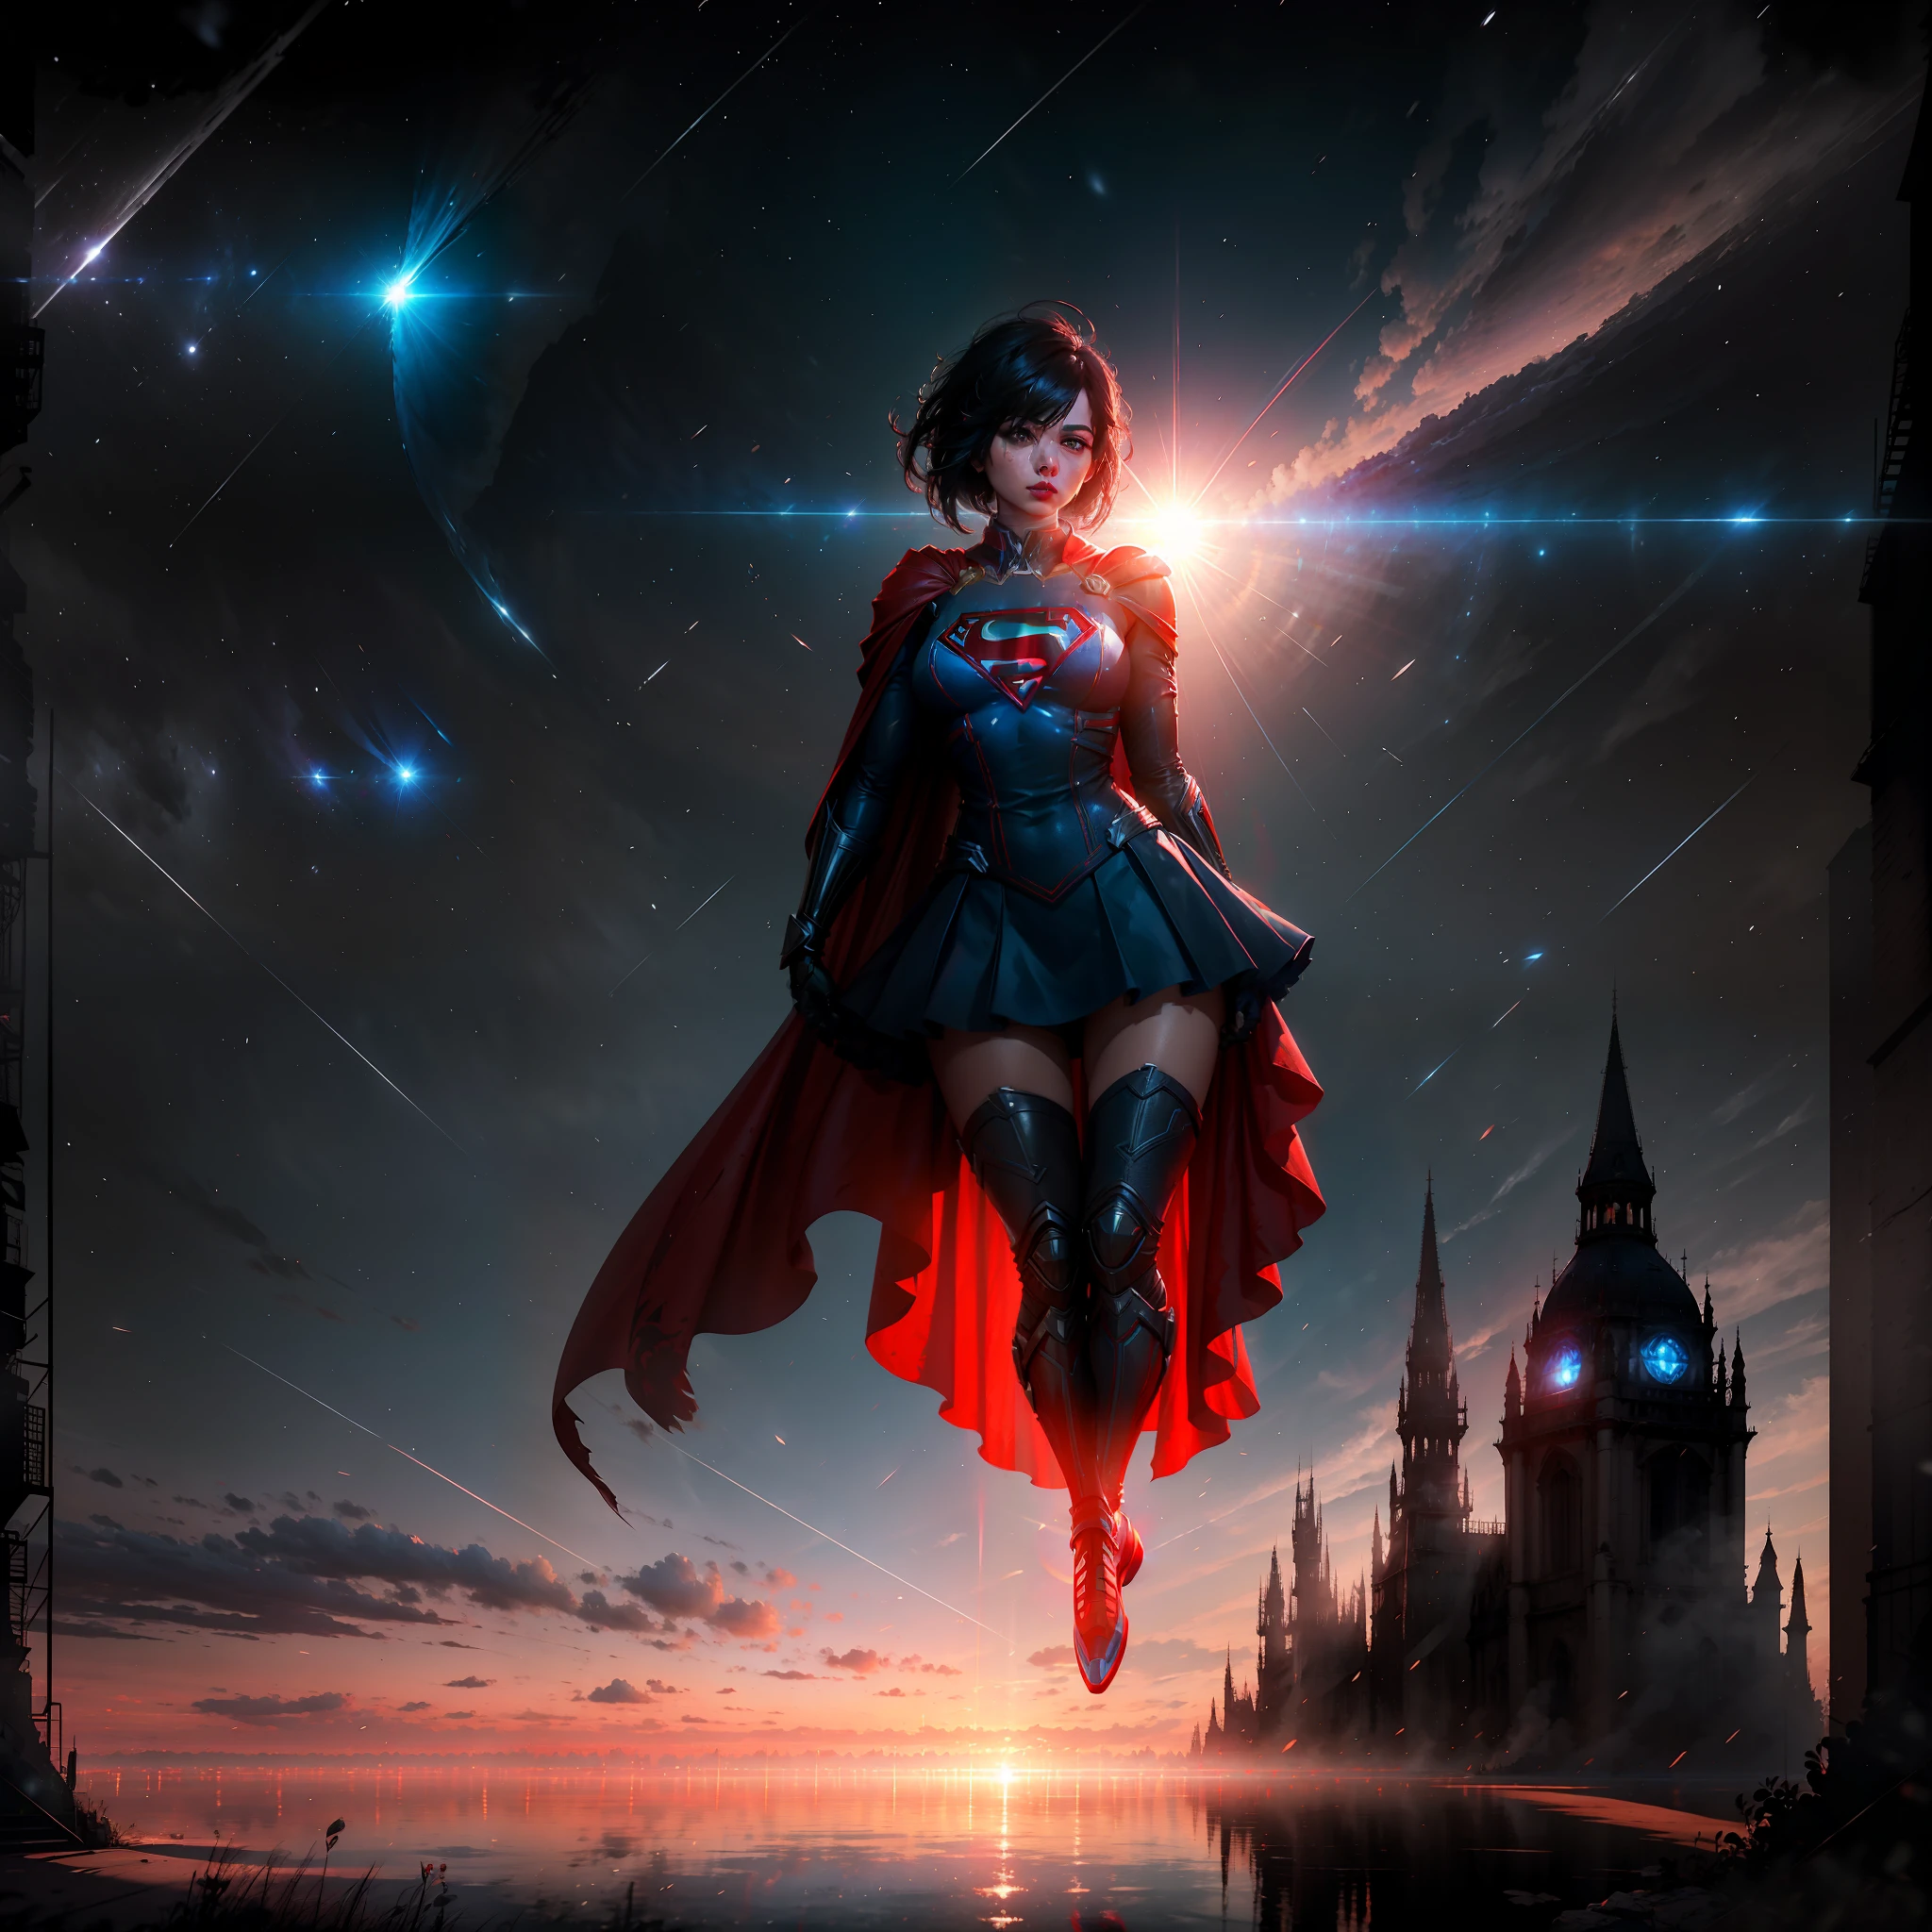 超女, 留着黑色短发的成年女性, 女超人角色扮演, 飘然, 背上披着长长的红色斗篷, 完美而美丽的脸庞, 虚幻引擎 5, 8千.